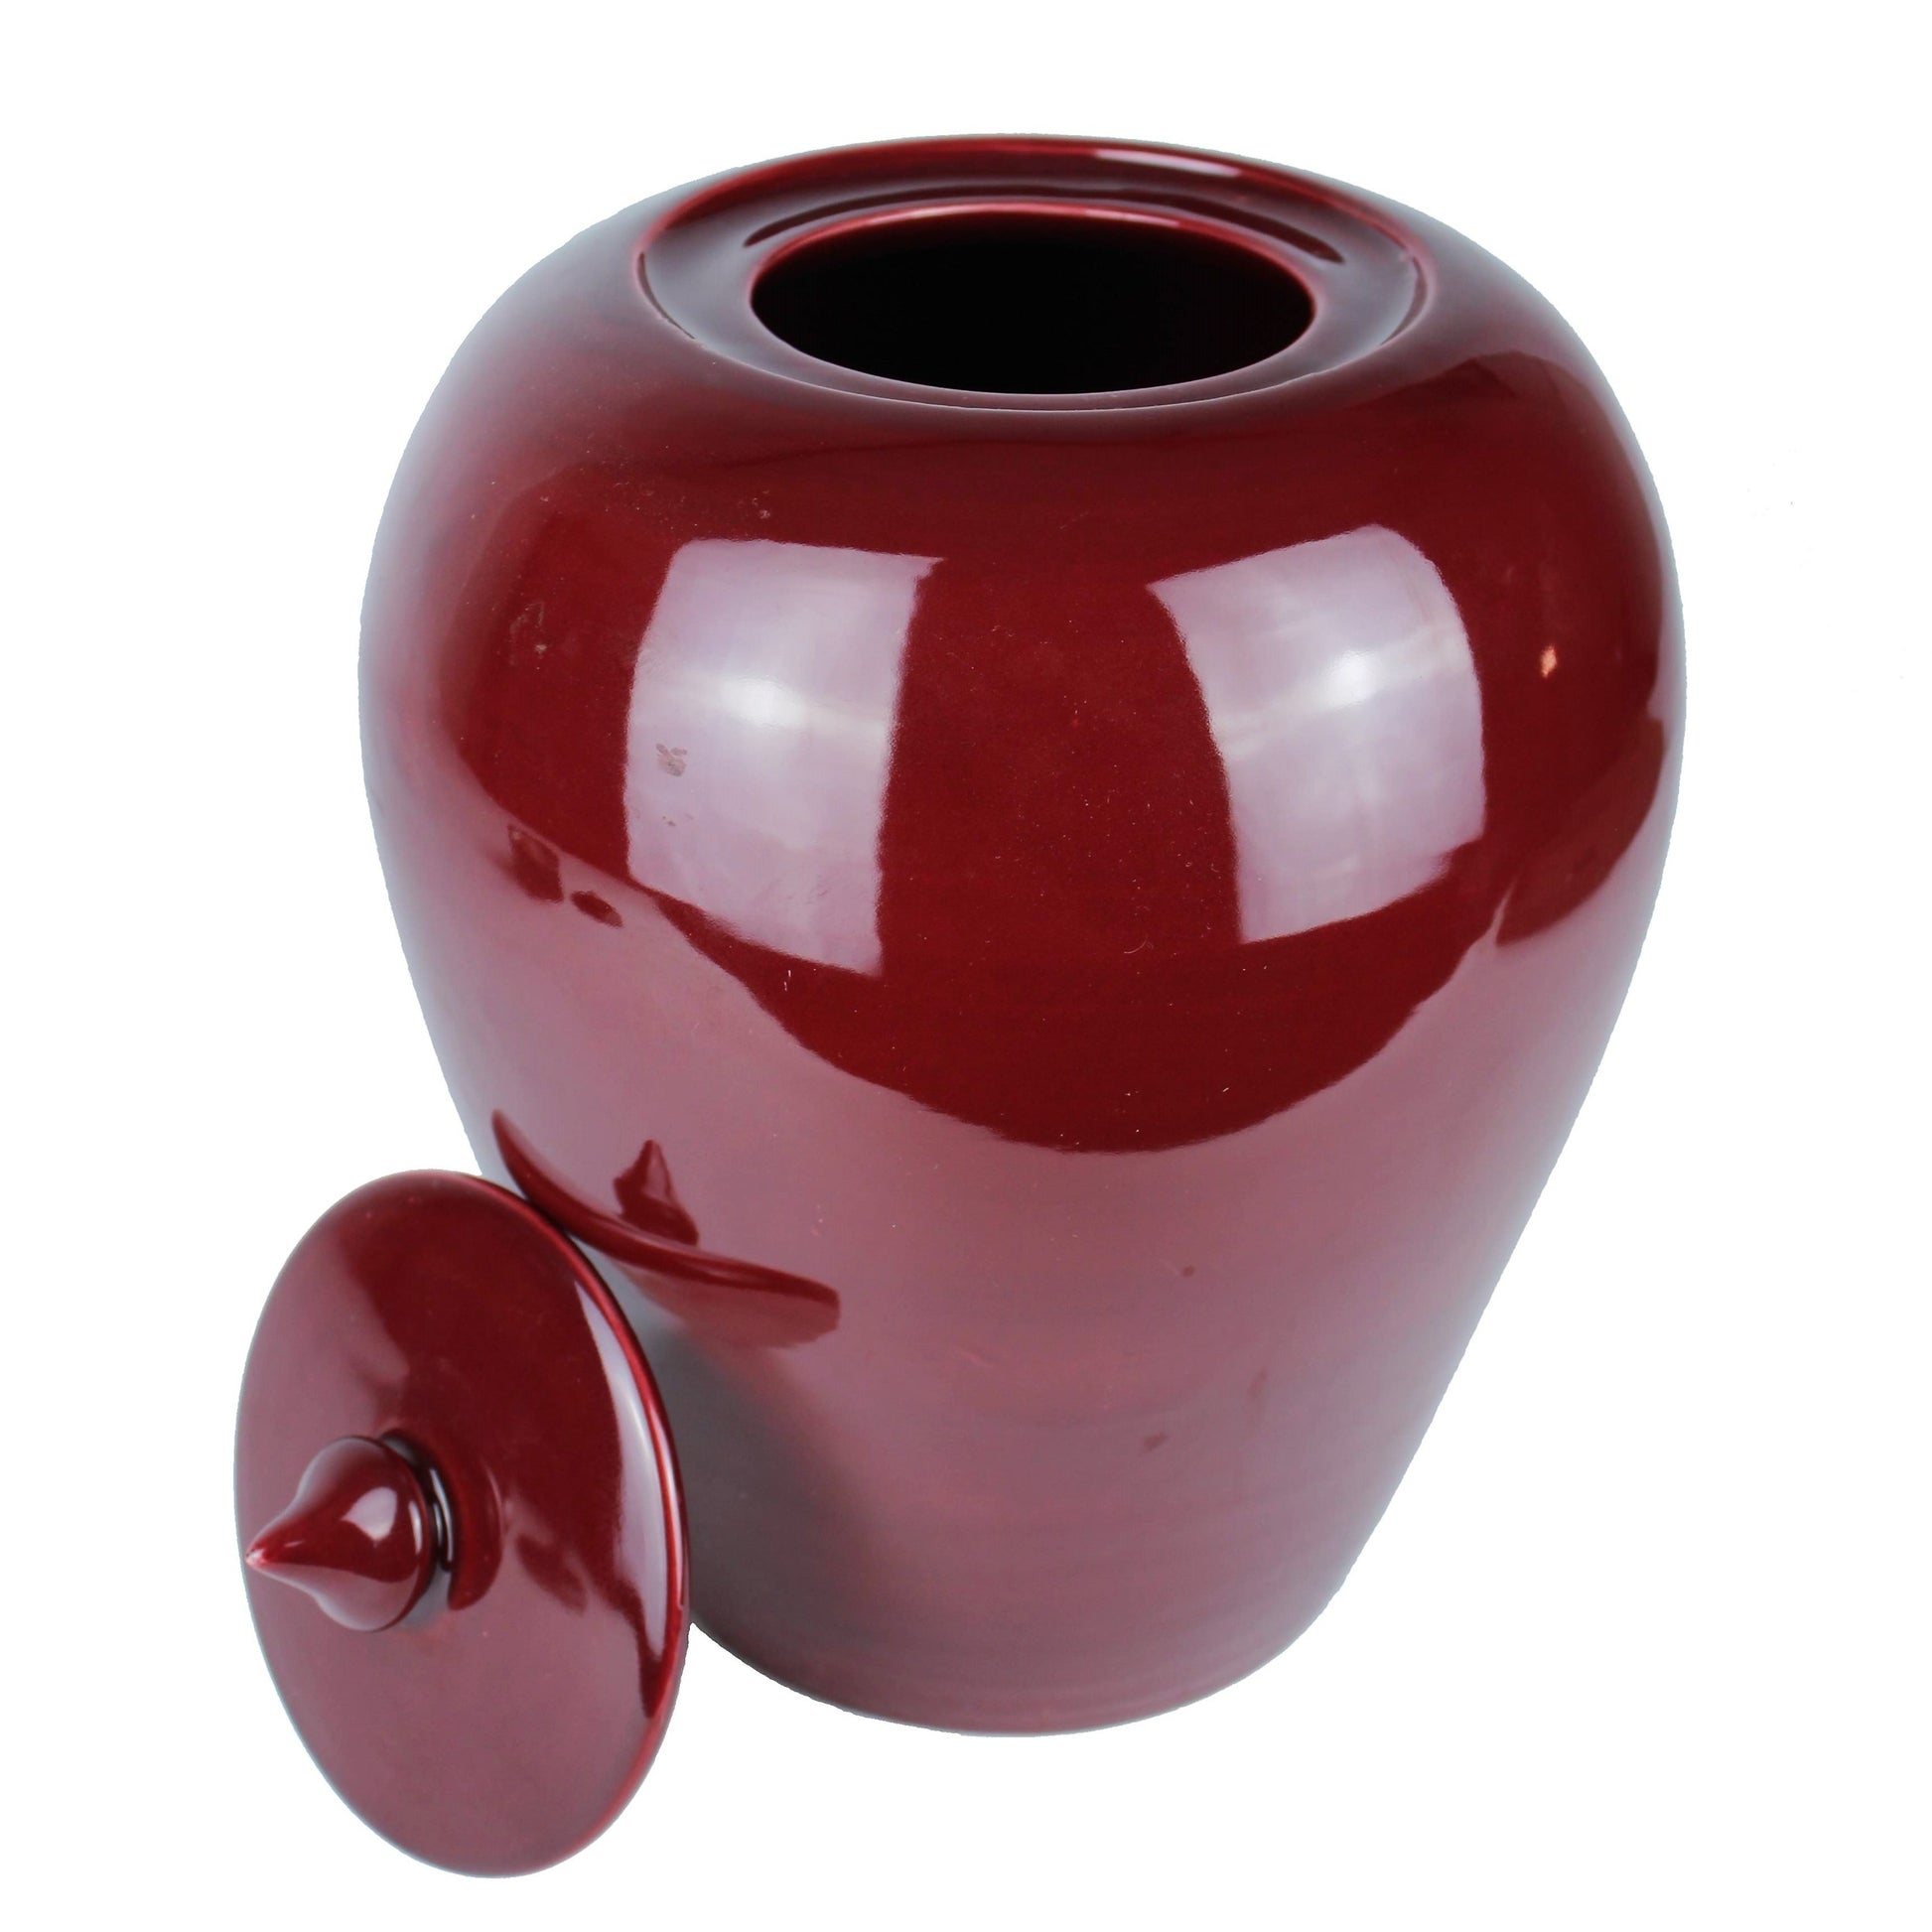 Vase mit Deckel aus Keramik handgemacht